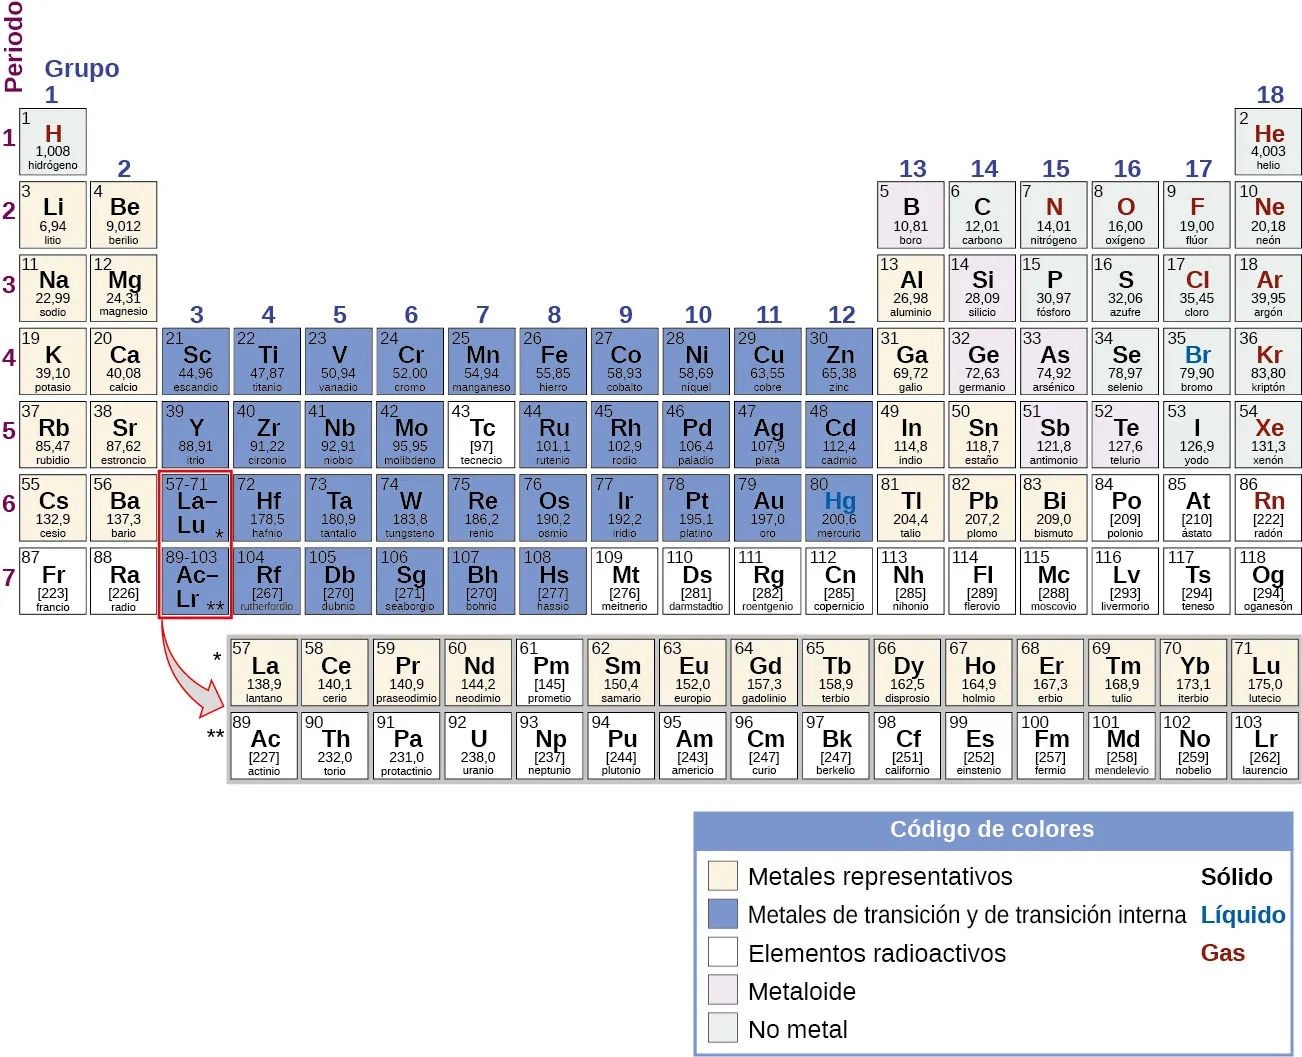 Se muestra la tabla periódica de los elementos. Las 18 columnas están marcadas como "Grupo" y las 7 filas como "Periodo". Debajo de la tabla de la derecha hay un recuadro marcado como "Código de colores" con diferentes colores para los metales representativos, los metales de transición y de transición interna, los elementos radiactivos, los metaloides y los no metales, así como los sólidos, los líquidos y los gases. Cada elemento se describirá en este orden: número atómico, nombre, símbolo, si es un metal representativo, un metal de transición y de transición interna, un elemento radiactivo, un metaloide o un no metal, si es un sólido, un líquido o un gas, y la masa atómica. Comenzando en la parte superior izquierda de la tabla, o periodo 1, grupo 1, hay una casilla que contiene "1, hidrógeno, H, no metal, gas, y 1,008". Solo hay otra casilla de elementos en el periodo 1, el grupo 18, que contiene "2, helio, H e, no metal, gas, y 4,003". El periodo 2, grupo 1 contiene "3, litio, L i, metal representativo, sólido, y 6,94", el grupo 2 contiene "4, berilio, B e, metal representativo, sólido, y 9,012". Los grupos 3 a 12 se saltan y el grupo 13 contiene "5, boro, B, metaloide, sólido, 10,81". El grupo 14 contiene "6, carbono, C, no metal, sólido, 12,01". El grupo 15 contiene "7, nitrógeno, N, no metal, gas, 14,01". El grupo 16 contiene "8, oxígeno, O, no metal, gas, 16,00". El grupo 17 contiene "9, flúor, F, no metal, gas, 19,00". El grupo 18 contiene "10, neón, N e, no metal, gas, y 20,18". El periodo 3, grupo 1 contiene "11, sodio, N a, metal representativo, sólido, y 22,99". El grupo 2 contiene "12, magnesio, M g, metal representativo, sólido, y 24,31". Los grupos 3 a 12 se saltan de nuevo en el periodo 3 y el grupo 13 contiene "13, aluminio, A l, metal representativo, sólido, y 26,98". El grupo 14 contiene "14, silicio, S i, metaloide, sólido, y 28,09". El grupo 15 contiene "15, fósforo, P, no metal, sólido, y 30,97”. El grupo 16 contiene "16, azufre, S, no metal, sólido, y 32,06”. El grupo 17 contiene "17, cloro, C l, no metal, gas, y 35,45”. El grupo 18 contiene "18, argón, A r, no metal, gas, y 39,95". El periodo 4, grupo 1 contiene "19, potasio, K, metal representativo, sólido, y 39,10". El grupo 2 contiene "20, calcio, C a, metal representativo, sólido, y 40,08". El grupo 3 contiene "21, escandio, S c, metal de transición y de transición interna, sólido, y 44,96". El grupo 4 contiene "22, titanio, T i, metal de transición y de transición interna, sólido, y 47,87". El grupo 5 contiene "23, vanadio, V, metal de transición y de transición interna, sólido, y 50,94". El grupo 6 contiene "24, cromo, C r, metal de transición y de transición interna, sólido, y 52,00". El grupo 7 contiene "25, manganeso, M n, metal de transición y de transición interna, sólido, y 54,94". El grupo 8 contiene "26, hierro, F e, metal de transición y de transición interna, sólido, y 55,85". El grupo 9 contiene "27, cobalto, C o, metal de transición y de transición interna, sólido, y 58,93". El grupo 10 contiene "28, níquel, N i, metal de transición y de transición interna, sólido, y 58,69". El grupo 11 contiene "29, cobre, C u, metal de transición y de transición interna, sólido, y 63,55". El grupo 12 contiene "30, zinc, Z n, metal de transición y de transición interna, sólido, y 65,38". El grupo 13 contiene "31, galio, G a, metal representativo, sólido, y 69,72". El grupo 14 contiene "32, germanio, G e, metaloide, sólido, y 72,63". El grupo 15 contiene "33, arsénico, A s, metaloide, sólido, y 74,92”. El grupo 16 contiene "34, selenio, S e, no metal, sólido, y 78,97”. El grupo 17 contiene "35, bromo, B r, no metal, líquido, y 79,90”. El grupo 18 contiene "36, criptón, K r, no metal, gas, y 83,80". El periodo 5, grupo 1 contiene "37, rubidio, R b, metal representativo, sólido, y 85,47". El grupo 2 contiene "38, estroncio, S r, metal representativo, sólido, y 87,62". El grupo 3 contiene "39, itrio, Y, metal de transición y de transición interna, sólido, y 88,91". El grupo 4 contiene "40, circonio, Z r, metal de transición y de transición interna, sólido, y 91,22". El grupo 5 contiene "41, niobio, N b, metal de transición y de transición interna, sólido, y 92,91". El grupo 6 contiene "42, molibdeno, M o, metal de transición y de transición interna, sólido, y 95,95". El grupo 7 contiene "43, tecnecio, T c, elemento radiactivo, sólido, y 97". El grupo 8 contiene "44, rutenio, R u, metal de transición y de transición interna, sólido, y 101,1". El grupo 9 contiene "45, rodio, R h, metal de transición y de transición interna, sólido, y 102,9". El grupo 10 contiene "46, paladio, P d, metal de transición y de transición interna, sólido, y 106,4". El grupo 11 contiene "47, plata, A g, metal de transición y de transición interna, sólido, y 107,9". El grupo 12 contiene "48, cadmio, C d, metal de transición y de transición interna, sólido, y 112,4". El grupo 13 contiene "49, indio, I n, metal representativo, sólido, y 114,8". El grupo 14 contiene "50, estaño, S n, metal representativo, sólido, y 118,7". El grupo 15 contiene "51, antimonio, S b, metaloide, sólido, y 121,8". El grupo 16 contiene "52, telurio, T e, metaloide, sólido, y 127,6”. El grupo 17 contiene "53, yodo, I, no metal, sólido, y 126,9”. El grupo 18 contiene "54, xenón, X e, no metal, gas, y 131,3". El periodo 6, grupo 1 contiene "55, cesio, C s, metal representativo, sólido, y 132,9". El grupo 2 contiene "56, bario, B a, metal representativo, sólido, y 137,3". El Grupo 3 rompe el esquema. El recuadro tiene una gran flecha que señala una fila de elementos debajo de la tabla con números atómicos que van del 57 al 71. En orden secuencial por número atómico, la primera casilla de esta fila contiene "57, lantano, L a, metal representativo, sólido, y 138,9". A su derecha, el siguiente es "58, cerio, C e, metal representativo, sólido, y 140,1". El siguiente es "59, praseodimio, P r, metal representativo, sólido, y 140,9". El siguiente es "60, neodimio, N d, metal representativo, sólido, y 144,2". El siguiente es "61, prometio, P m, elemento radiactivo, sólido, y 145". El siguiente es "62, samario, S m, metal representativo, sólido, y 150,4". El siguiente es "63, europio, E u, metal representativo, sólido, y 152,0". El siguiente es "64, gadolinio, G d, metal representativo, sólido, y 157,3". El siguiente es "65, terbio, T b, metal representativo, sólido, y 158,9". El siguiente es "66, disprosio, D y, metal representativo, sólido, y 162,5". El siguiente es "67, holmio, H o, metal representativo, sólido, y 164,9". El siguiente es "68, erbio, E r, metal representativo, sólido, y 167,3". El siguiente es "69, tulio, T m, metal representativo, sólido, y 168,9". El siguiente es "70, iterbio, Y b, metal representativo, sólido, y 173,1". El último de esta fila especial es "71, lutecio, L u, metal representativo, sólido, y 175,0". Continuando en el periodo 6, el grupo 4 contiene "72, hafnio, H f, metal de transición y de transición interna, sólido, y 178,5". El grupo 5 contiene "73, tantalio, T a, metal de transición y de transición interna, sólido, y 180,9". El grupo 6 contiene "74, tungsteno, W, metal de transición y de transición interna, sólido, y 183,8". El grupo 7 contiene "75, renio, R e, metal de transición y de transición interna, sólido, y 186,2". El grupo 8 contiene "76, osmio, O s, metal de transición y de transición interna, sólido, y 190,2". El grupo 9 contiene "77, iridio, I r, metal de transición y de transición interna, sólido, y 192,2". El grupo 10 contiene "78, platino, P t, metal de transición y de transición interna, sólido, y 195,1". El grupo 11 contiene "79, oro, A u, metal de transición y de transición interna, sólido, y 197,0". El grupo 12 contiene "80, mercurio, H g, metal de transición y de transición interna, líquido, y 200,6". El grupo 13 contiene "81, talio, T l, metal representativo, sólido, y 204,4". El grupo 14 contiene "82, plomo, P b, metal representativo, sólido, y 207,2". El grupo 15 contiene "83, bismuto, B i, metal representativo, sólido, y 209,0". El grupo 16 contiene "84, polonio, P o, elemento radiactivo, sólido, y 209". El grupo 17 contiene "85, astato, A t, elemento radiactivo, sólido, y 210". El grupo 18 contiene "86, radón, R n, elemento radiactivo, gas, y 222". El periodo 7, grupo 1 contiene "87, francio, F r, elemento radiactivo, sólido, y 223". El grupo 2 contiene "88, radio, R a, elemento radiactivo, sólido, y 226". El grupo 3 rompe el patrón de forma muy similar a lo que ocurre en el periodo 6. Una gran flecha apunta desde la casilla del periodo 7, grupo 3, a una fila especial que contiene los elementos con números atómicos que van del 89 al 103, justo debajo de la fila que contiene los números atómicos del 57 al 71. En orden secuencial por número atómico, la primera casilla de esta fila contiene "89, actinio, A c, elemento radiactivo, sólido, y 227" A su derecha, el siguiente es "90, torio, T h, elemento radiactivo, sólido, y 232,0". El siguiente es "91, protactinio, P a, elemento radiactivo, sólido, y 231,0". El siguiente es "92, uranio, U, elemento radiactivo, sólido, y 238,0". El siguiente es "93, neptunio, N p, elemento radiactivo, sólido, y N p". El siguiente es "94, plutonio, P u, elemento radiactivo, sólido, y 244". El siguiente es "95, americio, A m, elemento radiactivo, sólido, y 243". El siguiente es "96, curio, C m, elemento radiactivo, sólido, y 247". El siguiente es "97, berkelio, B k, elemento radiactivo, sólido, y 247". El siguiente es "98, californio, C f, elemento radiactivo, sólido, y 251". El siguiente es "99, einstenio, E s, elemento radiactivo, sólido, y 252". El siguiente es "100, fermio, F m, elemento radiactivo, sólido, y 257". El siguiente es "101, mendelevio, M d, elemento radiactivo, sólido, y 258". El siguiente es "102, nobelio, N o, elemento radiactivo, sólido, y 259". El último de esta fila especial es "103, laurencio, L r, elemento radiactivo, sólido, y 262". Continuando en el periodo 7, el grupo 4 contiene "104, rutherfordio, R f, metal de transición y de transición interna, sólido, y 267". El grupo 5 contiene "105, dubnio, D b, metal de transición y de transición interna, sólido, y 270". El grupo 6 contiene "106, seaborgio, S g, metal de transición y de transición interna, sólido, y 271". El grupo 7 contiene "107, bohrio, B h, metal de transición y de transición interna, sólido, y 270". El grupo 8 contiene "108, hassio, H s, metal de transición y de transición interna, sólido, y 277". El grupo 9 contiene "109, meitnerio, M t, elemento radiactivo, sólido, y 276". El grupo 10 contiene "110, darmstadtio, D s, elemento radiactivo, sólido, y 281". El grupo 11 contiene "111, roentgenio, R g, elemento radiactivo, sólido, y 282". El grupo 12 contiene "112, copernicio, C n, elemento radiactivo, líquido, y 285". El grupo 13 contiene "113, ununtrio, U u t, elemento radiactivo, sólido, y 285". El grupo 14 contiene "114, flerovio, F l, elemento radiactivo, sólido, y 289". El grupo 15 contiene "115, ununpentio, U u p, elemento radiactivo, sólido, y 288". El grupo 16 contiene "116, livermorio, L v, elemento radiactivo, sólido, y 293". El grupo 17 contiene "117, ununseptio, U u s, radiactivo, sólido, y 294". El grupo 18 contiene "118, ununoctio, U u o, elemento radiactivo, sólido, y 294".